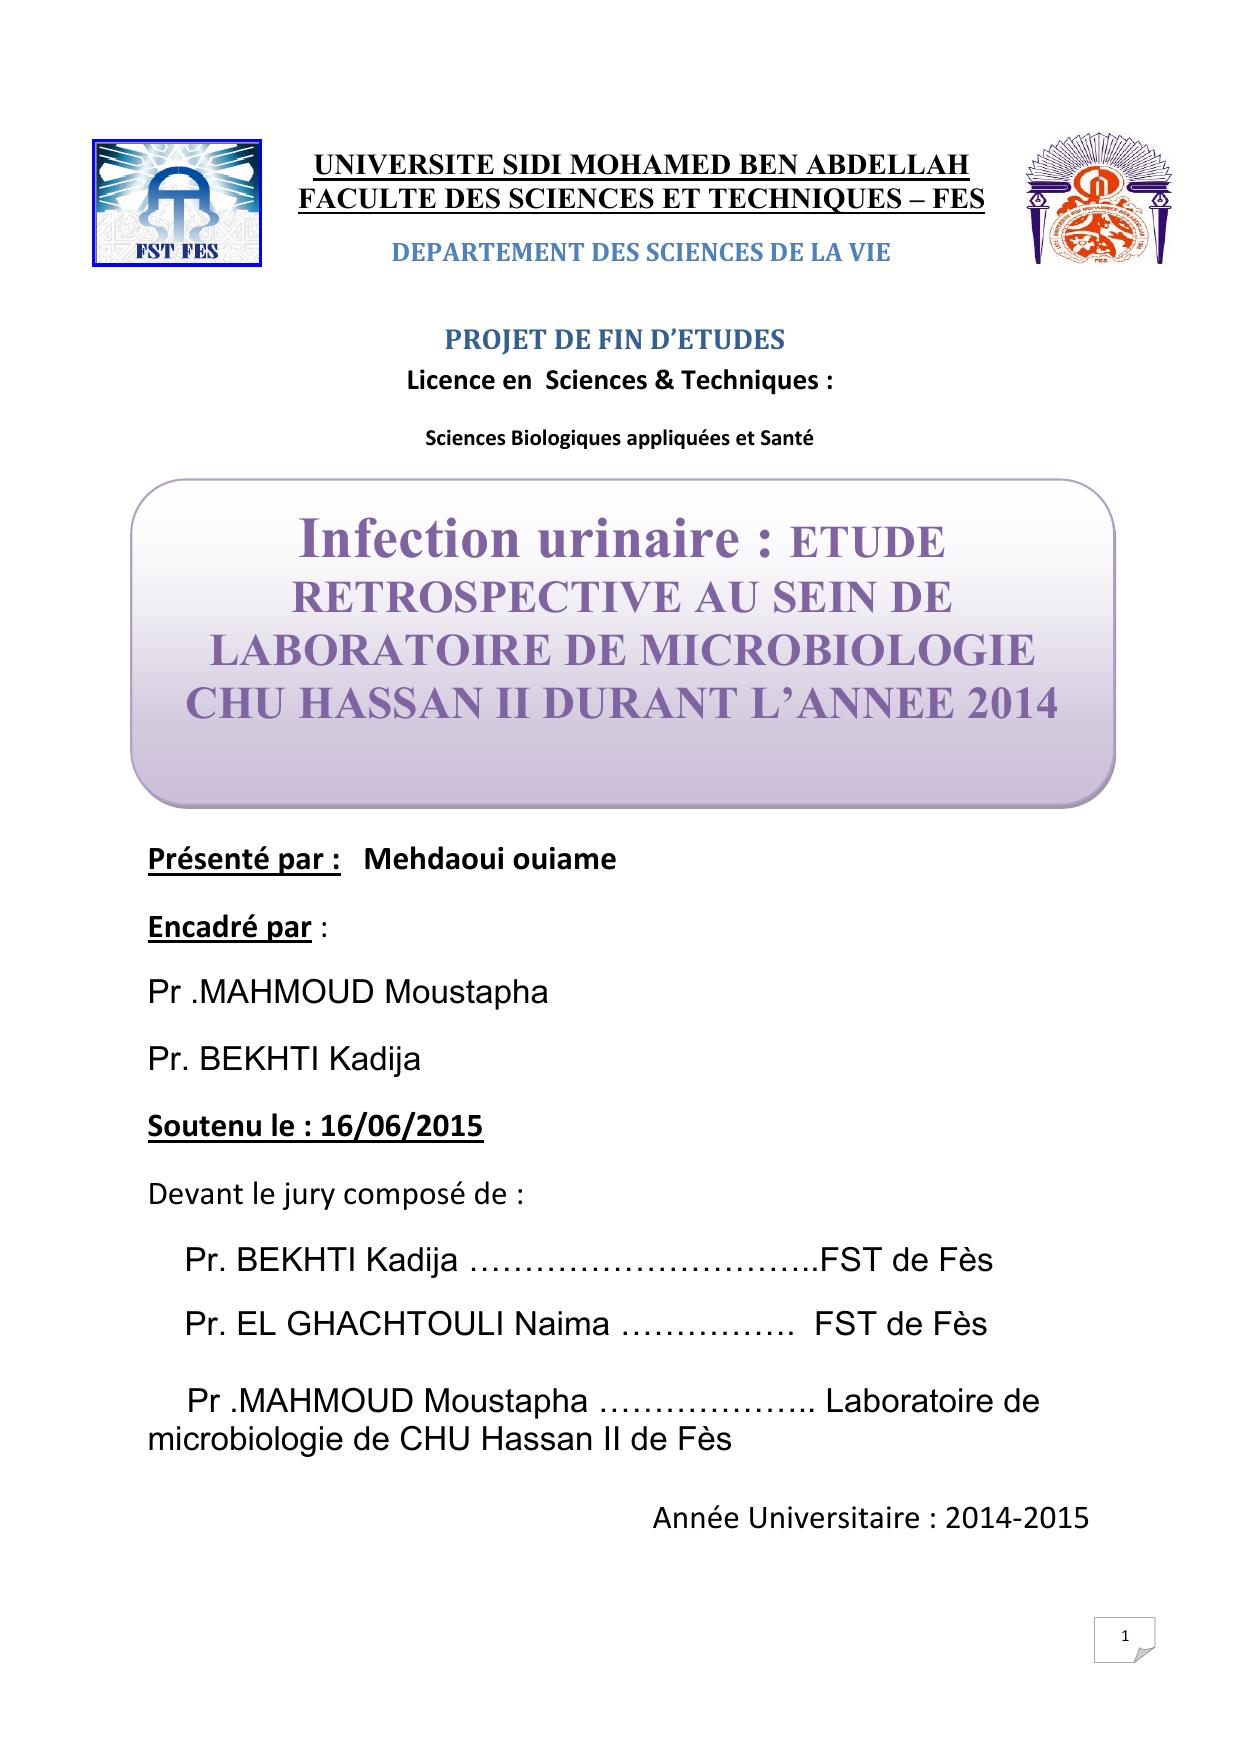 Infection urinaire: Etude rétrospective au sein de laboratoire de microbiologie CHU Hassan II durant l'année 2014